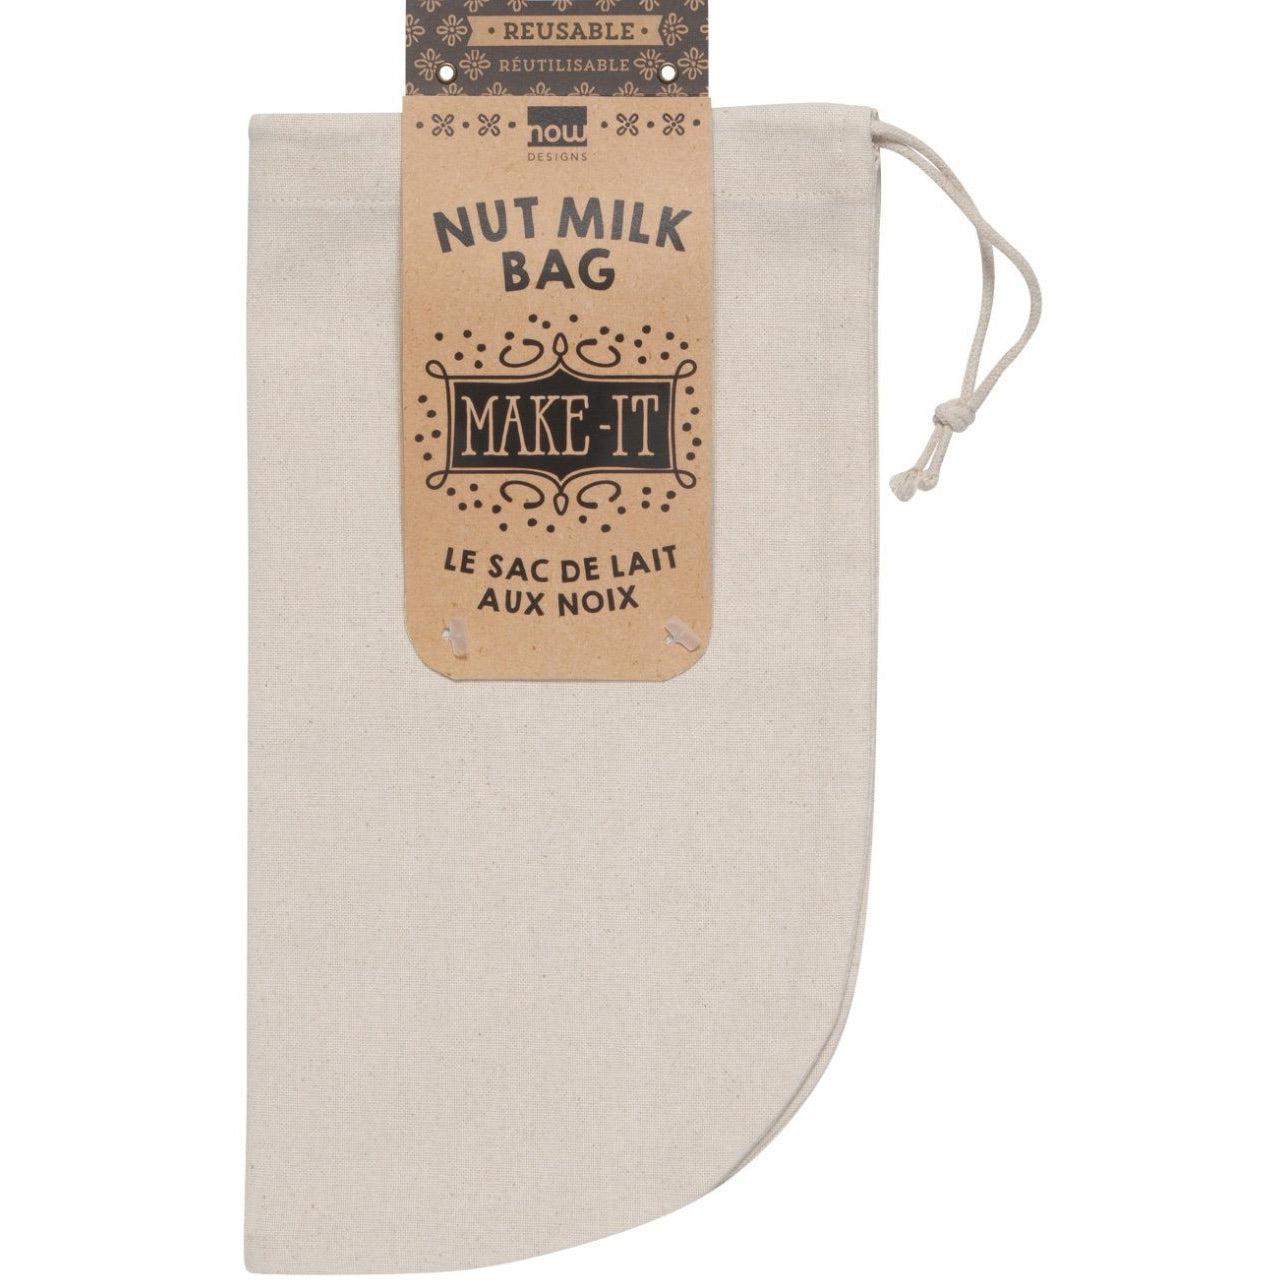 Nut Milk Bag Kitchen Now Designs Prettycleanshop